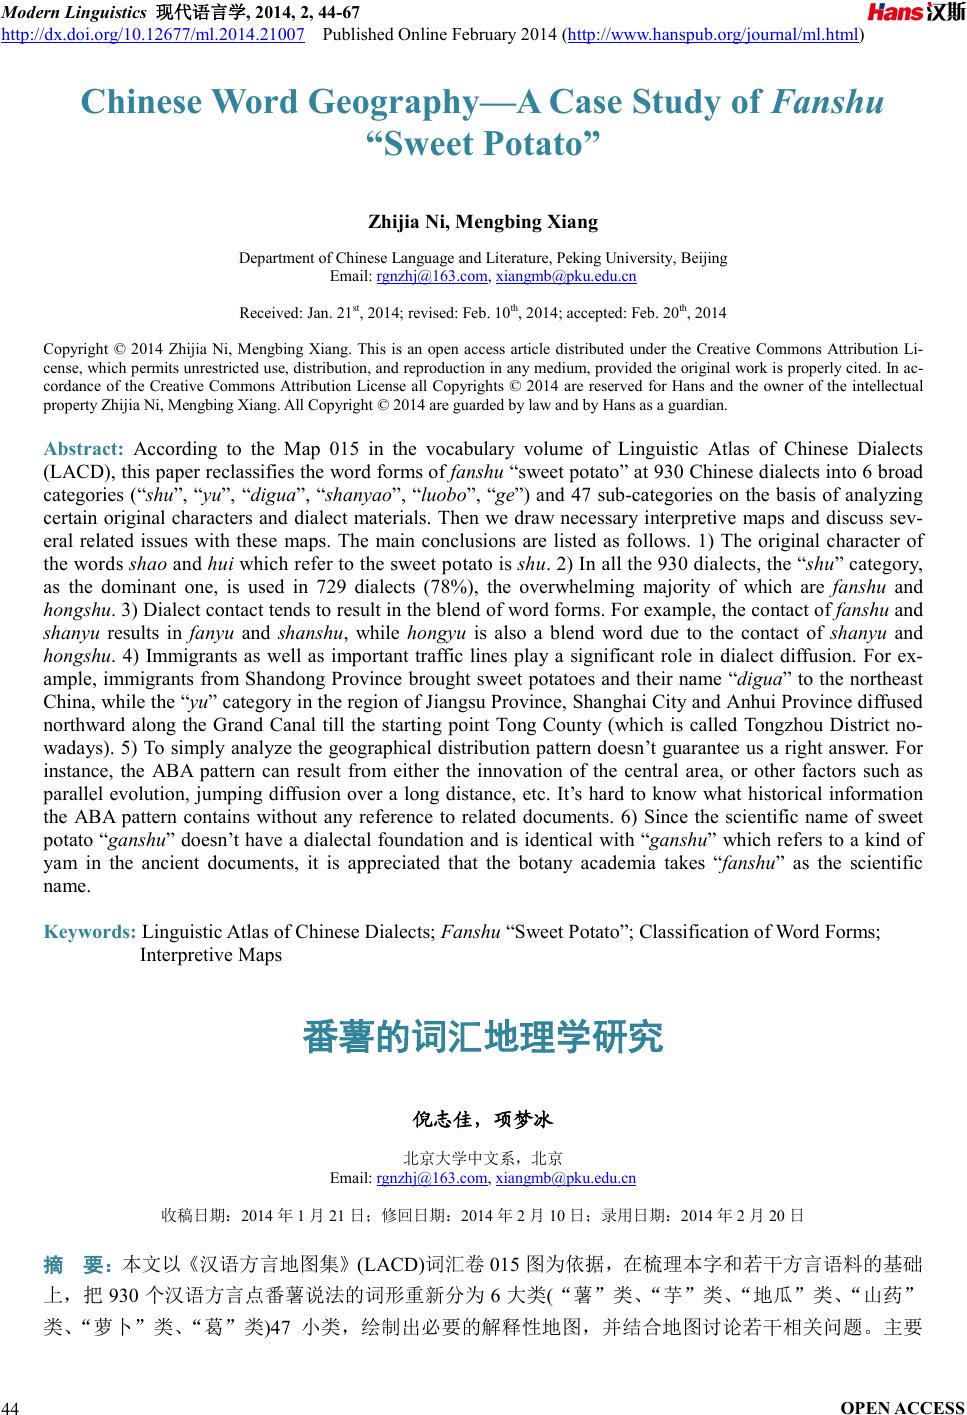 番薯的词汇地理学研究Chinese Word Geography—A Case Study of Fanshu